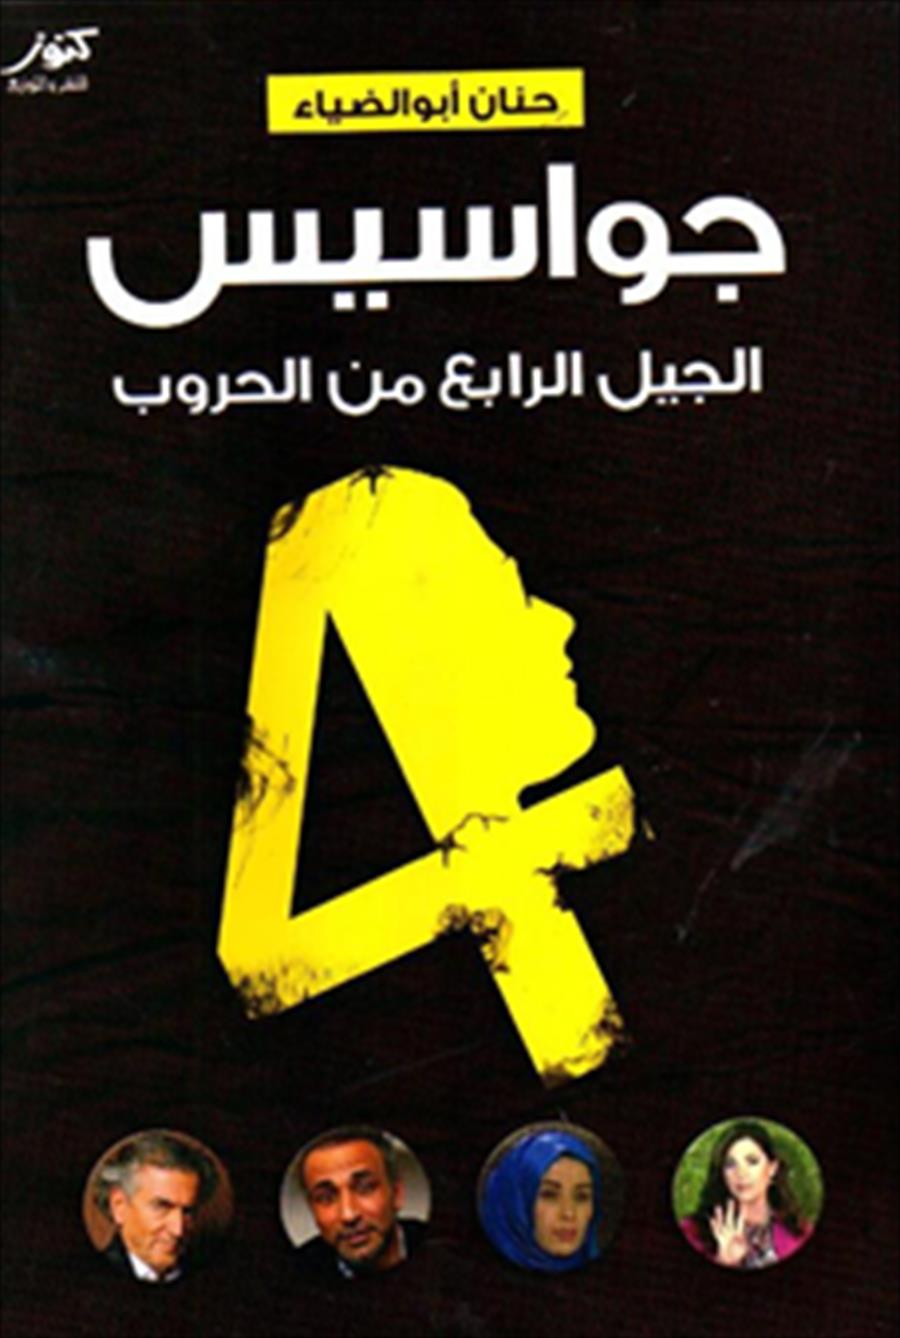 نجم يطالب بسحب كتاب من معرض القاهرة